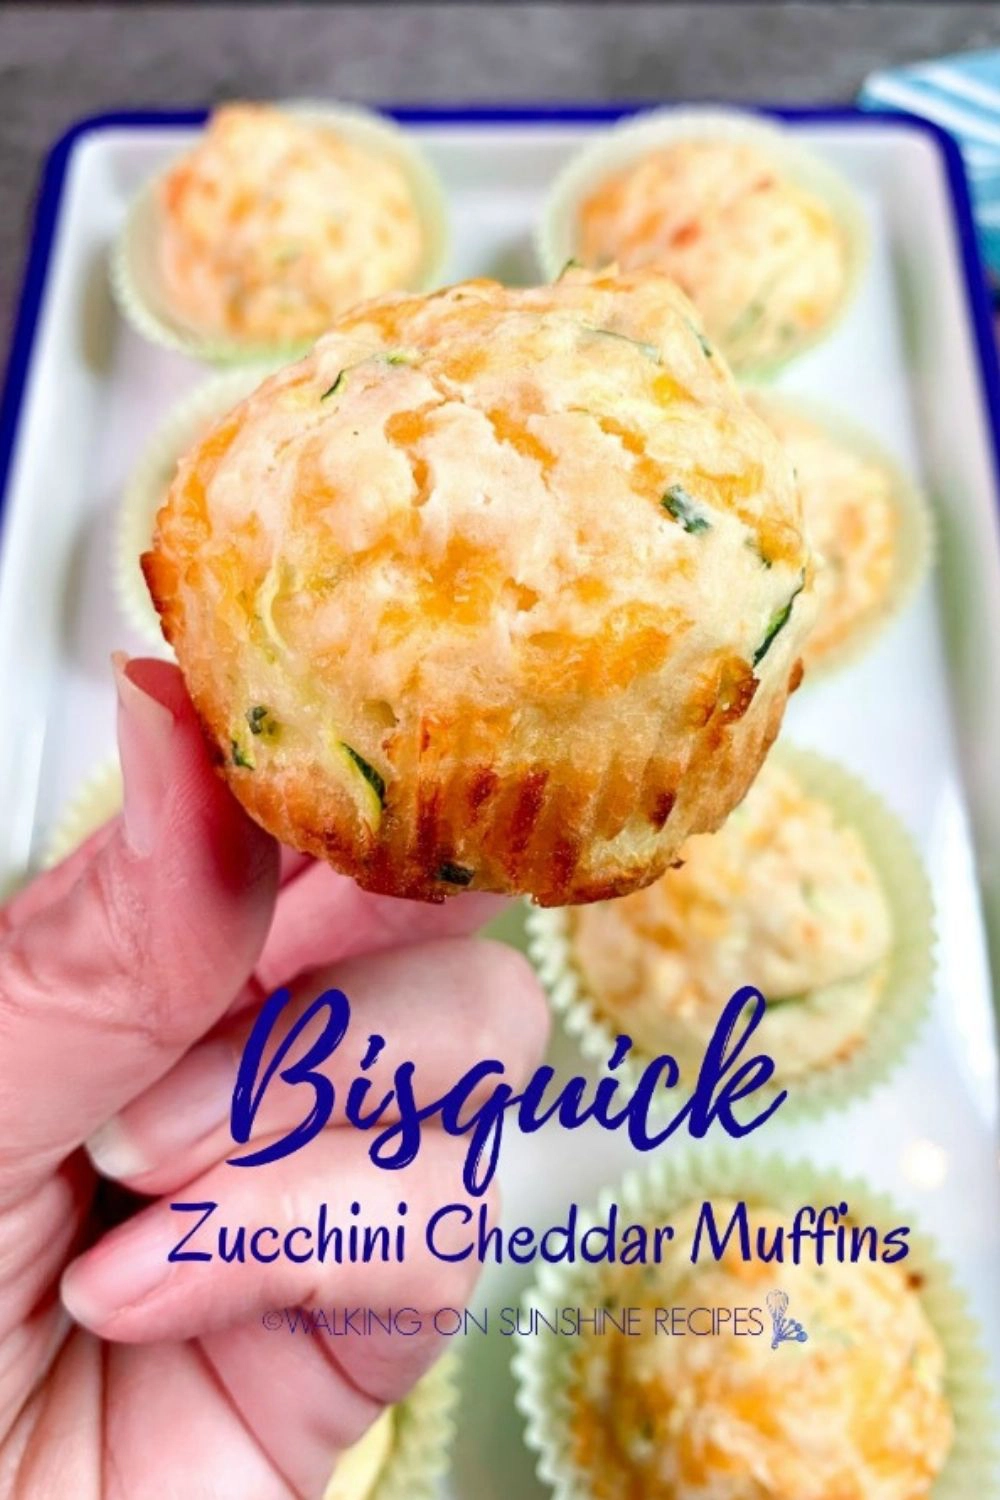 Bisquick Zucchini Cheddar Muffins.